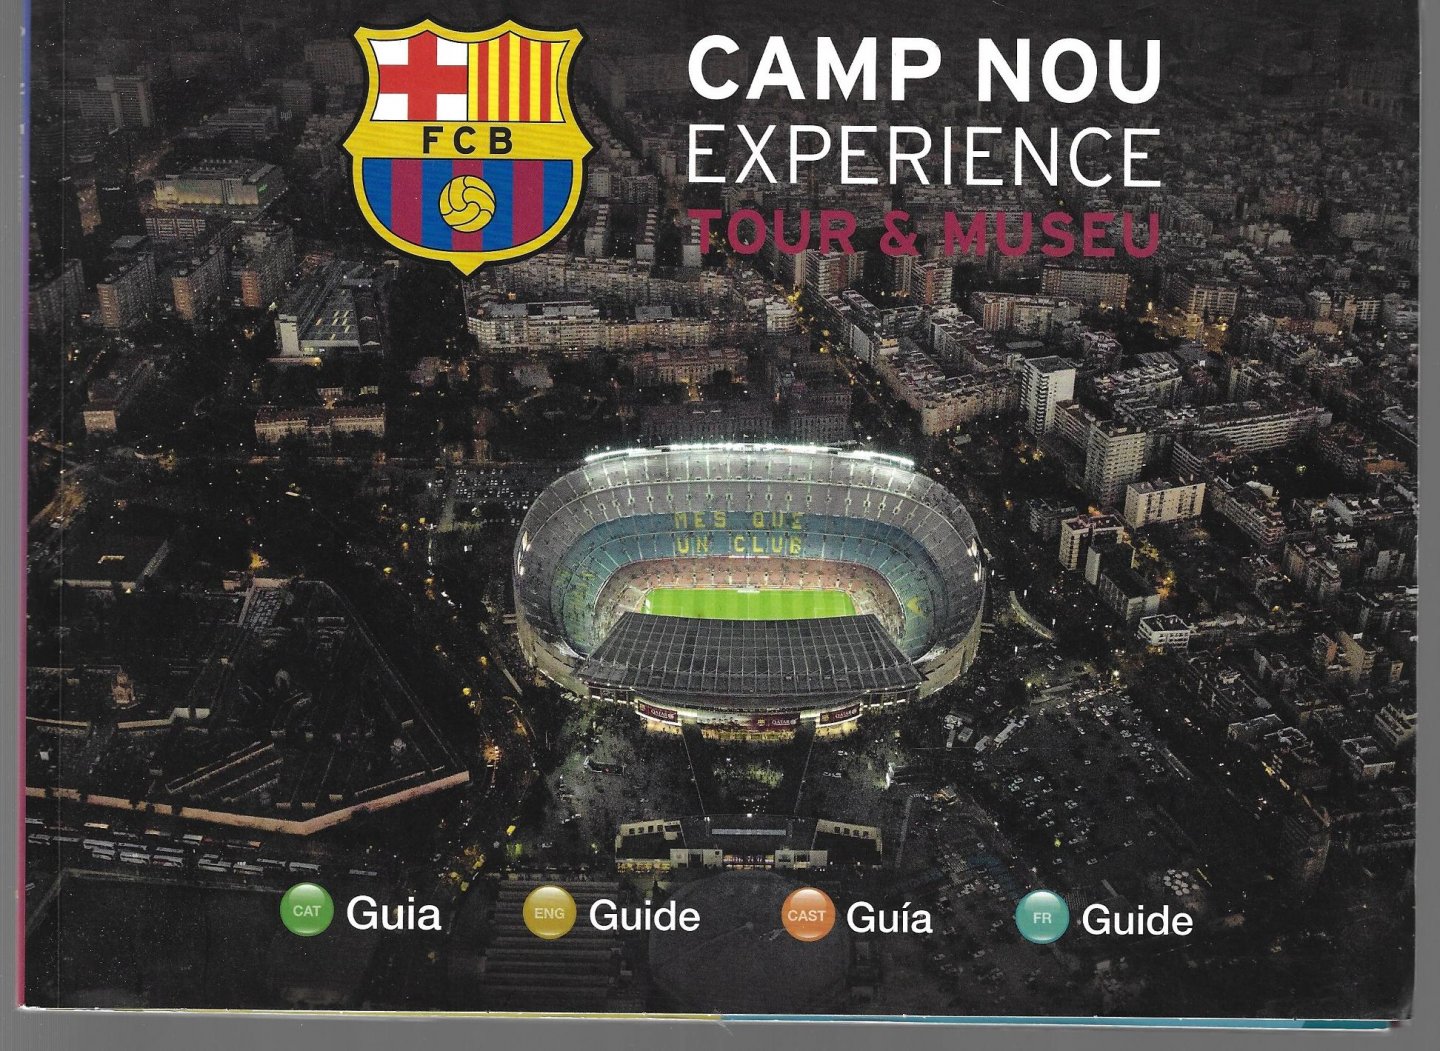  - Camp Nou experience -Tour & Museu